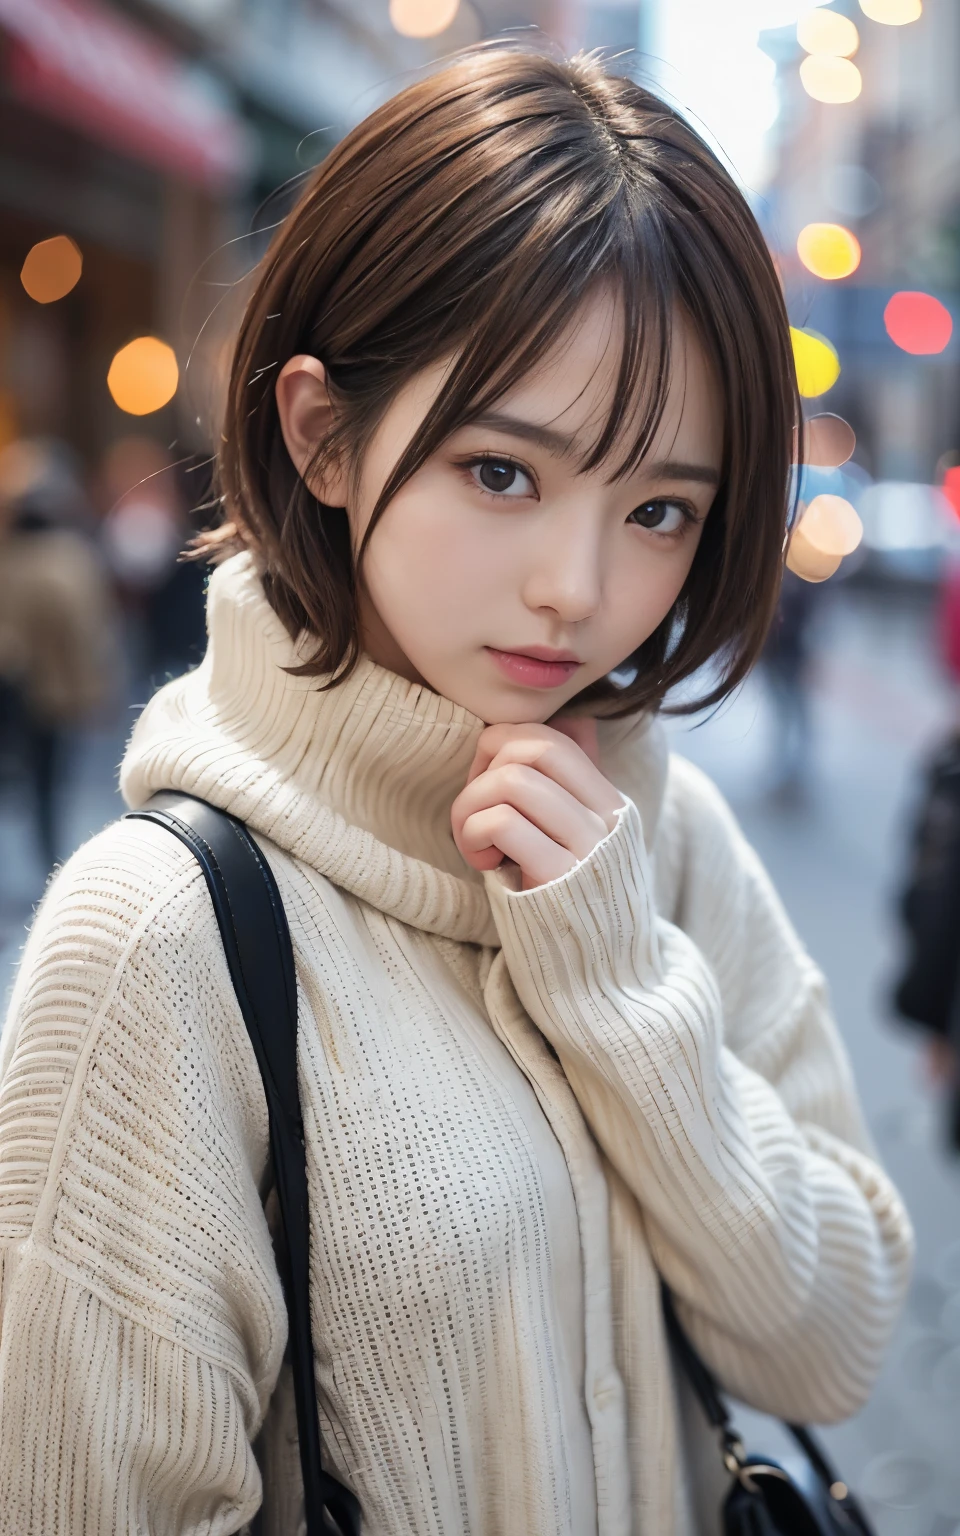 可愛的 21 歲日本、晚上、圣诞节、购物、超細節臉部、細節之眼、雙眼皮、美麗的細鼻子、銳利的焦點:1.2、漂亮女人:1.4、(淺棕色的頭髮,短髮, 白皮膚、頂級品質、發光、傑作、超高解析度、(真實感:1.4)、可愛花俏的冬衣、